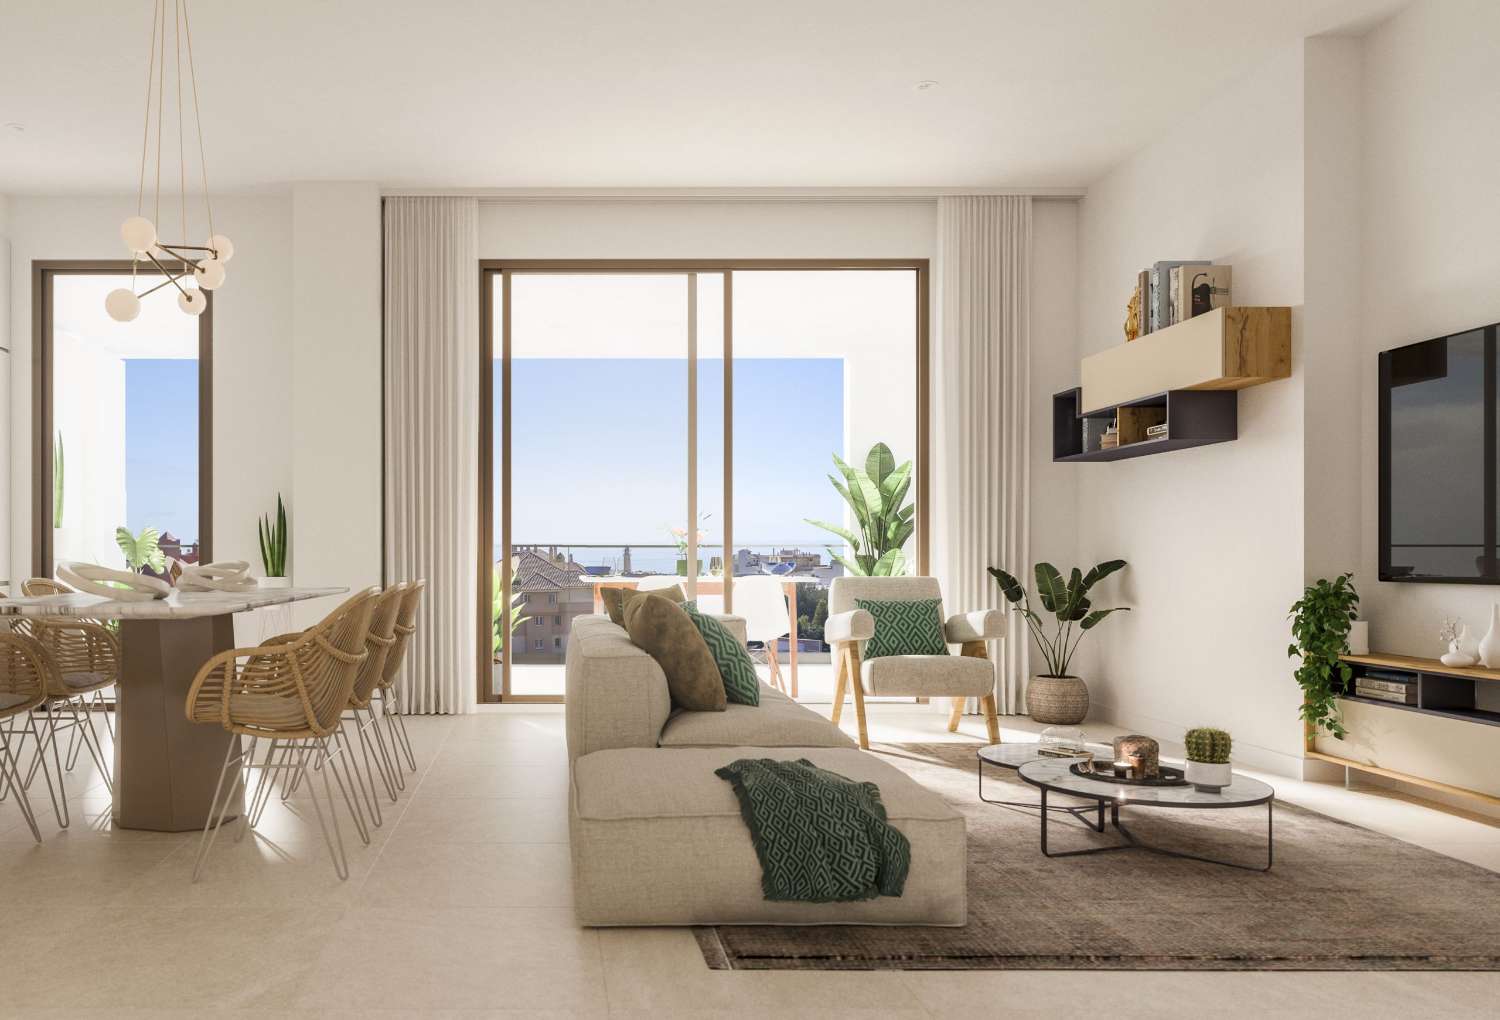 2 eller 3 soverom, 2 bad og en terrasse med utsikt over havet – fra € 218.000